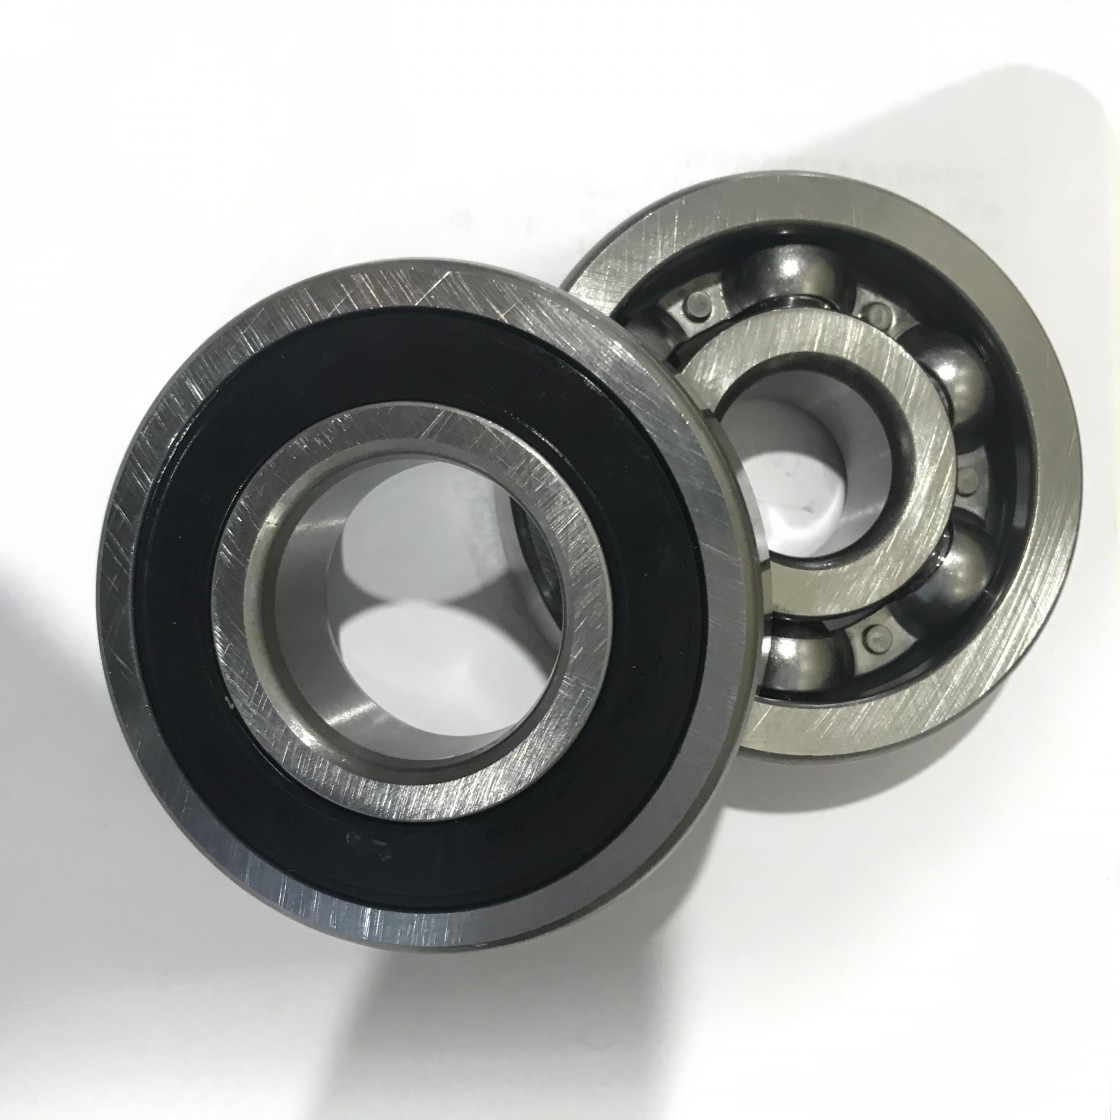 35 mm x 72 mm x 17 mm  skf 6207 bearing